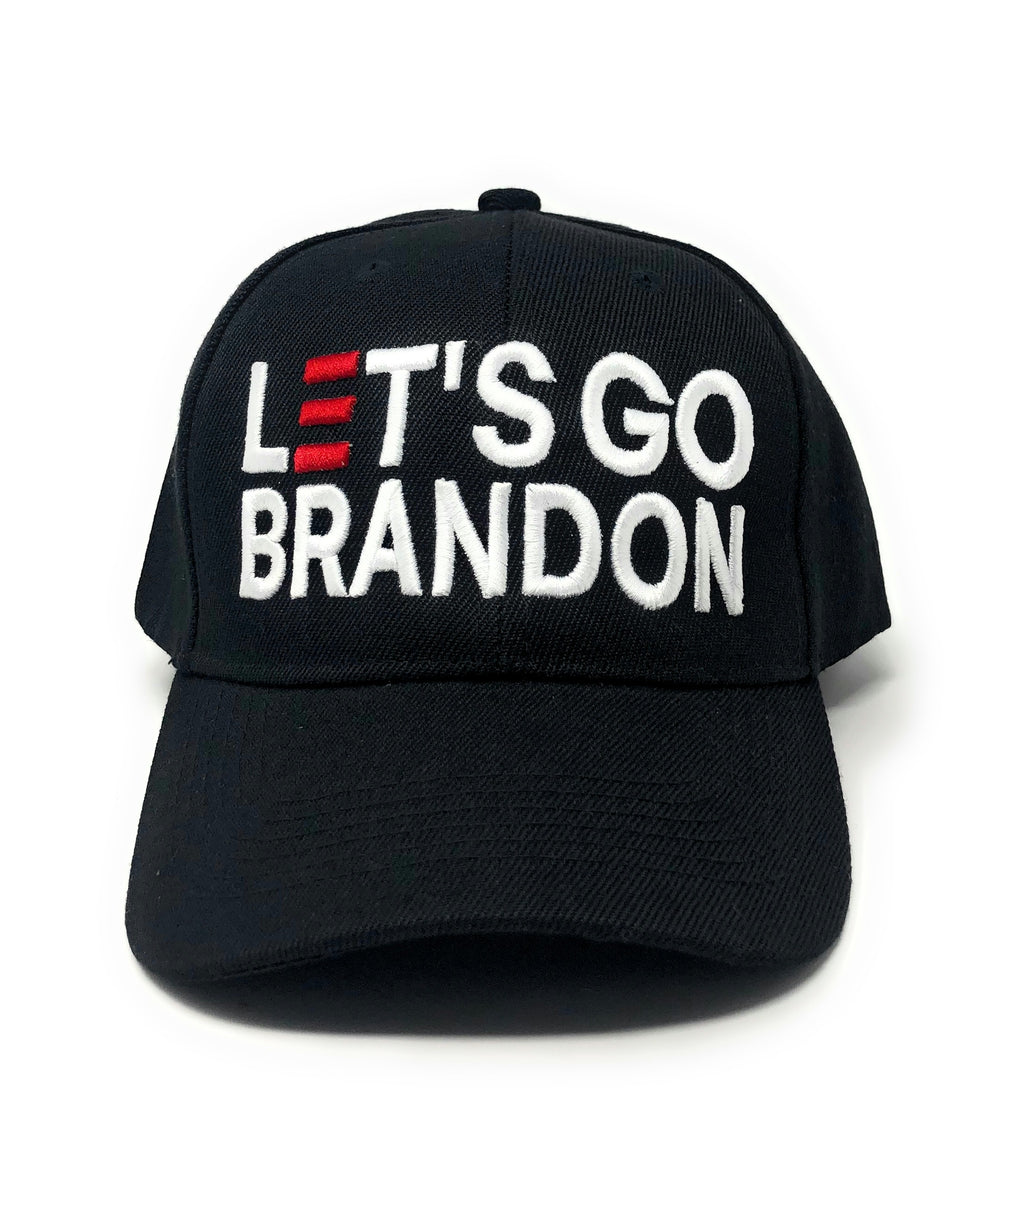 Let’s Go Brandon Cap (2 Colors)